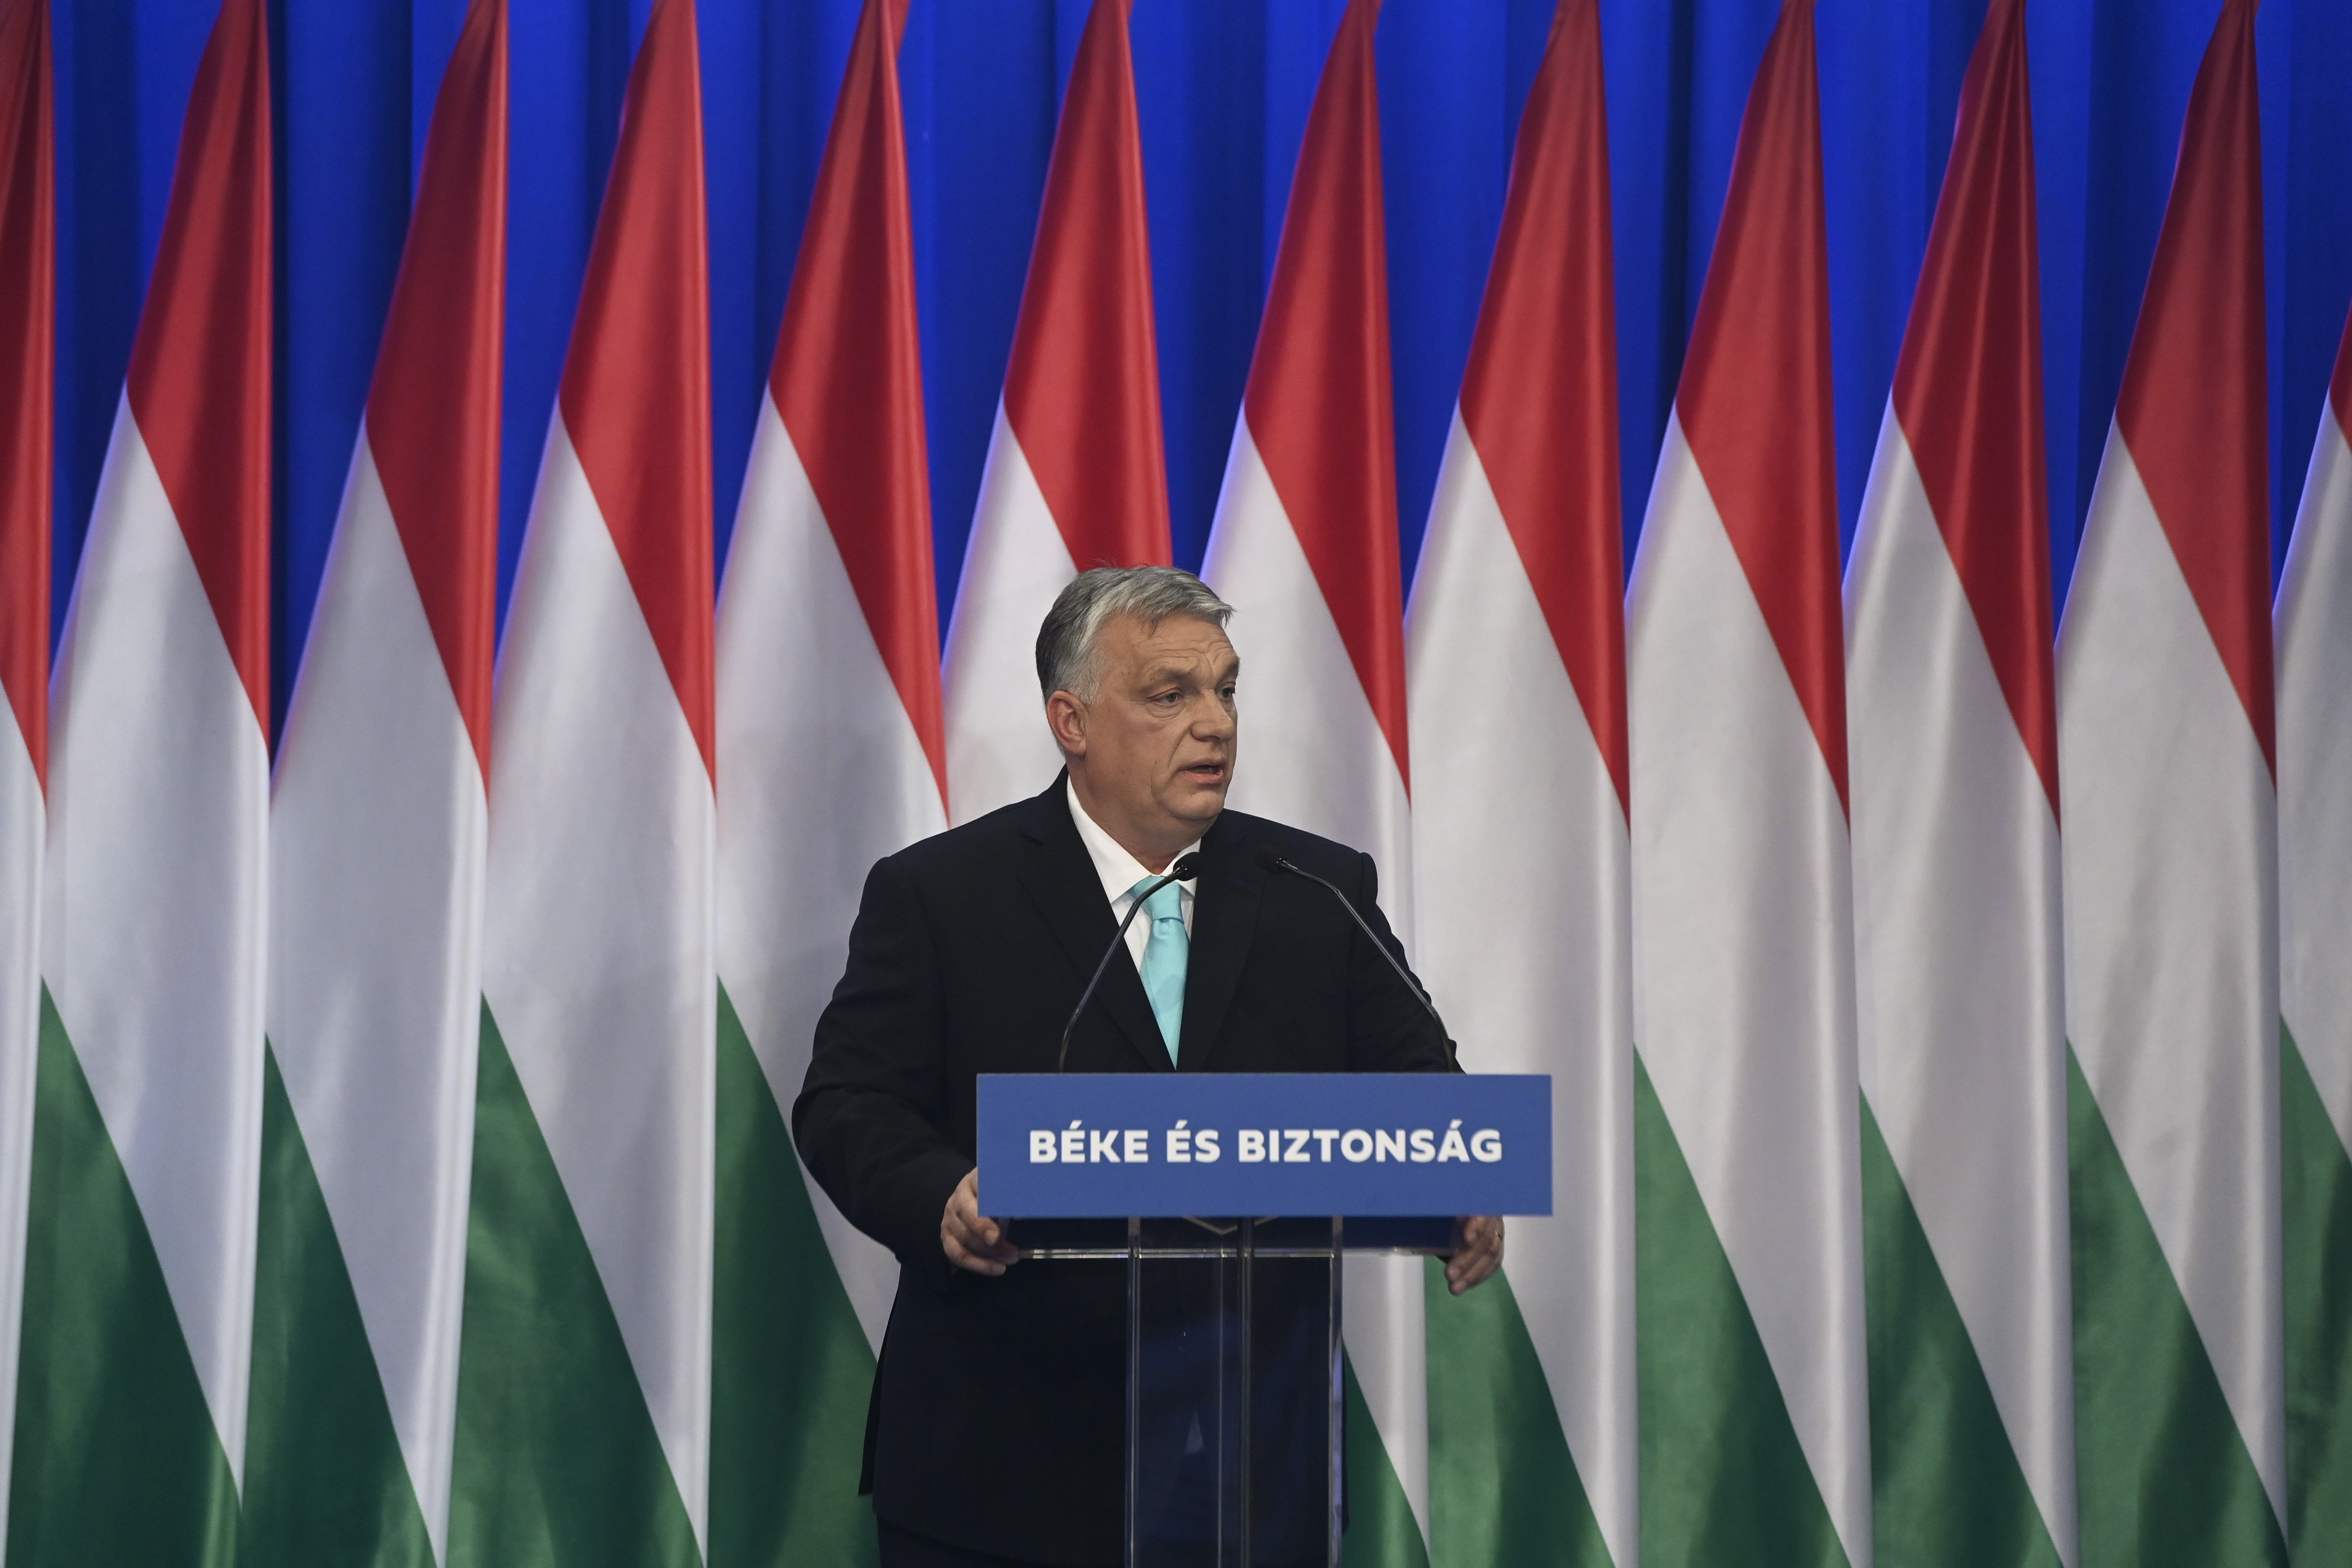 Békét sürgetve üzent a külhoni magyaroknak március 15. alkalmából Orbán Viktor